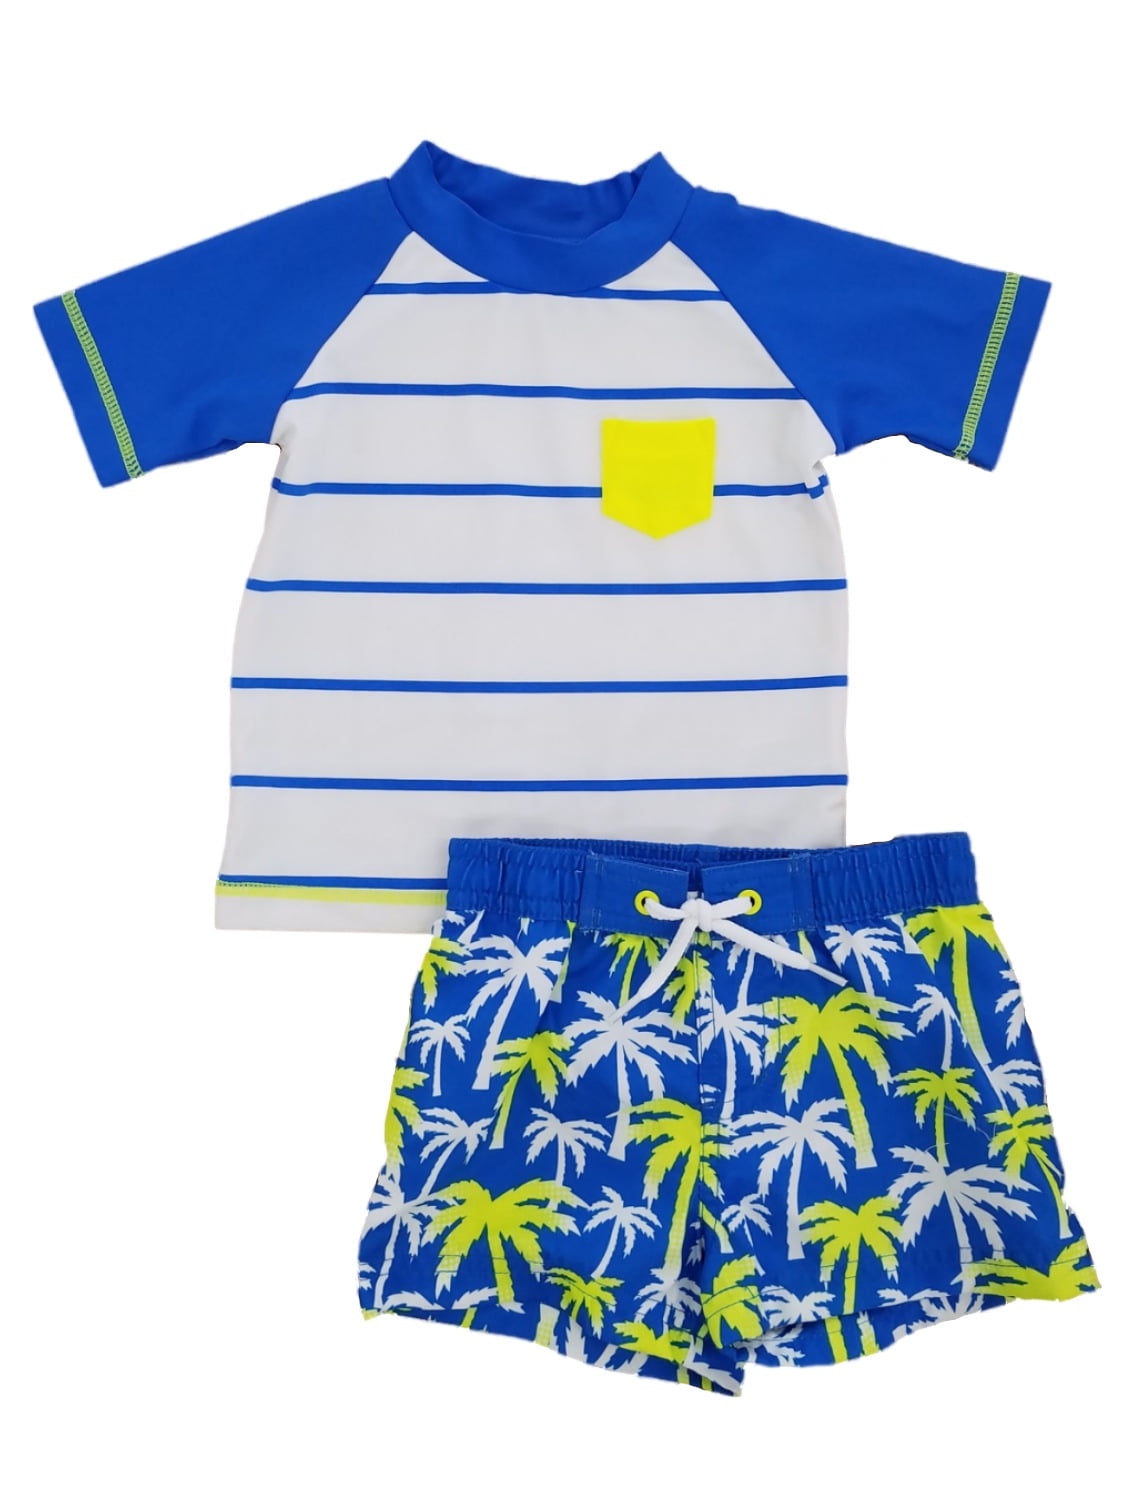 Freestyle Revolution Little Boys' Rashguard Set Infant/Toddler/Little Boys Swim Shirt and Trunks Swimwear Set 